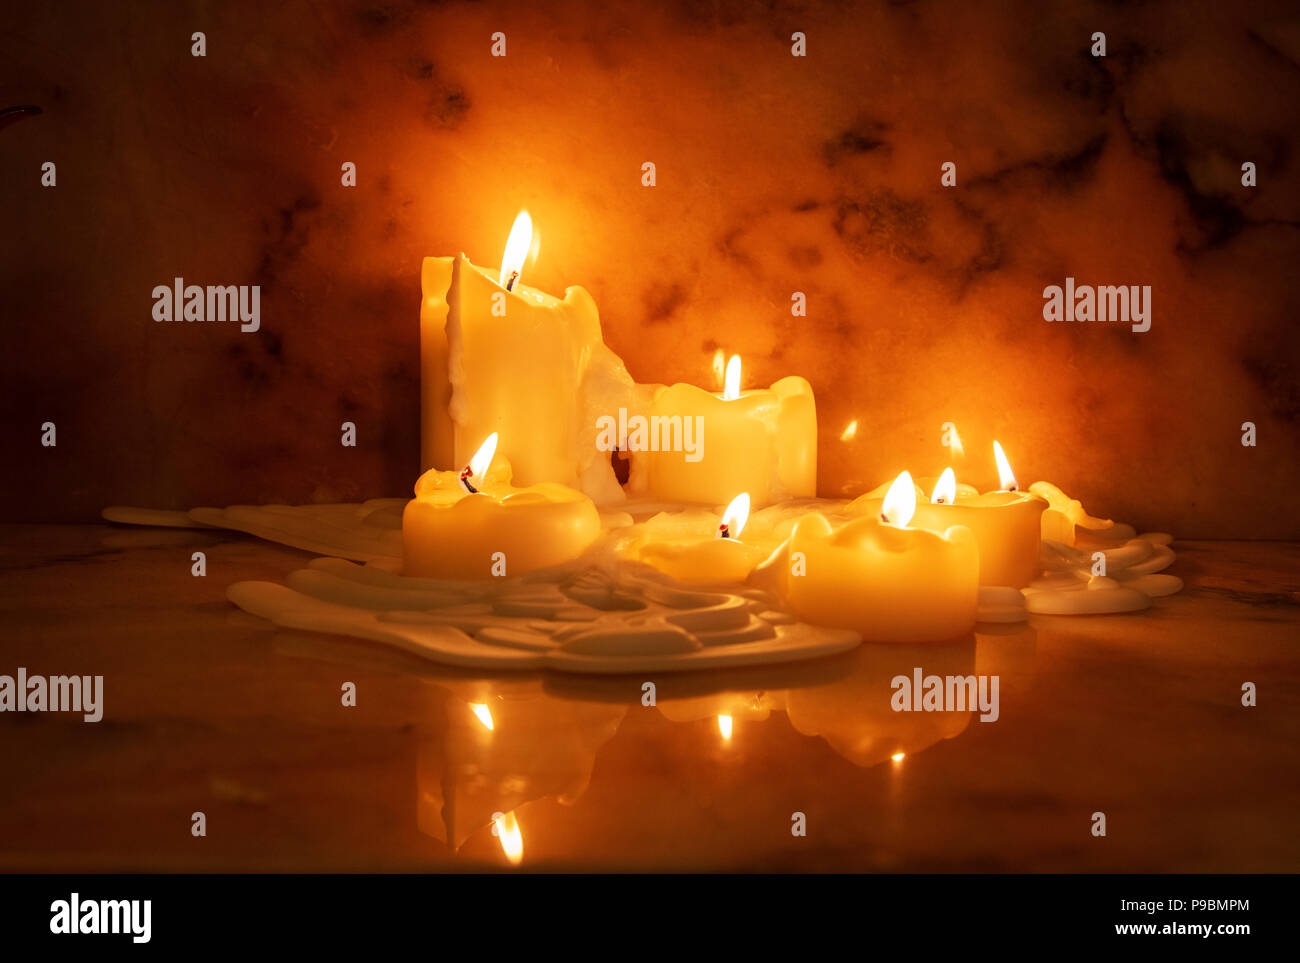 Schmelzen Wachs auf brennende Kerzen auf dem Marmor Oberfläche in einem intimen Abend zu Hause wider Stockfoto